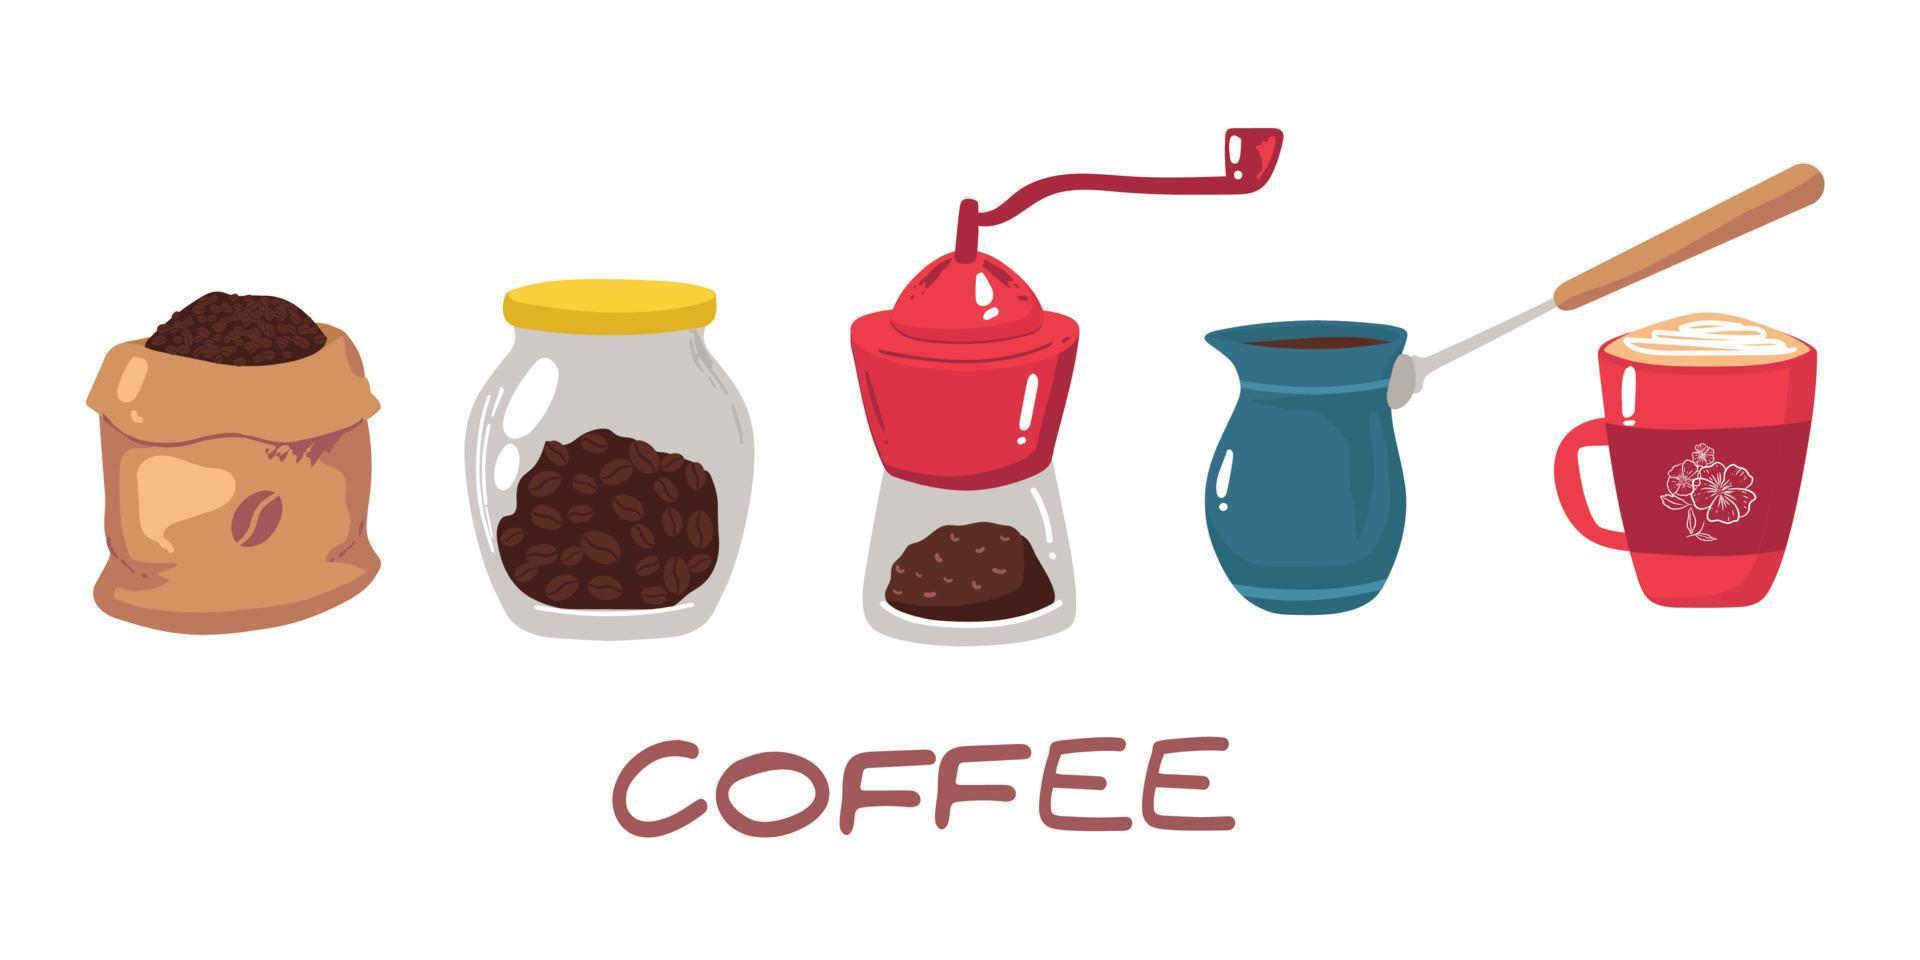 gran conjunto de iconos de estilo plano. elegante juego de café de iconos. café, bebidas de café, cafeteras y otros dispositivos y postres, vector